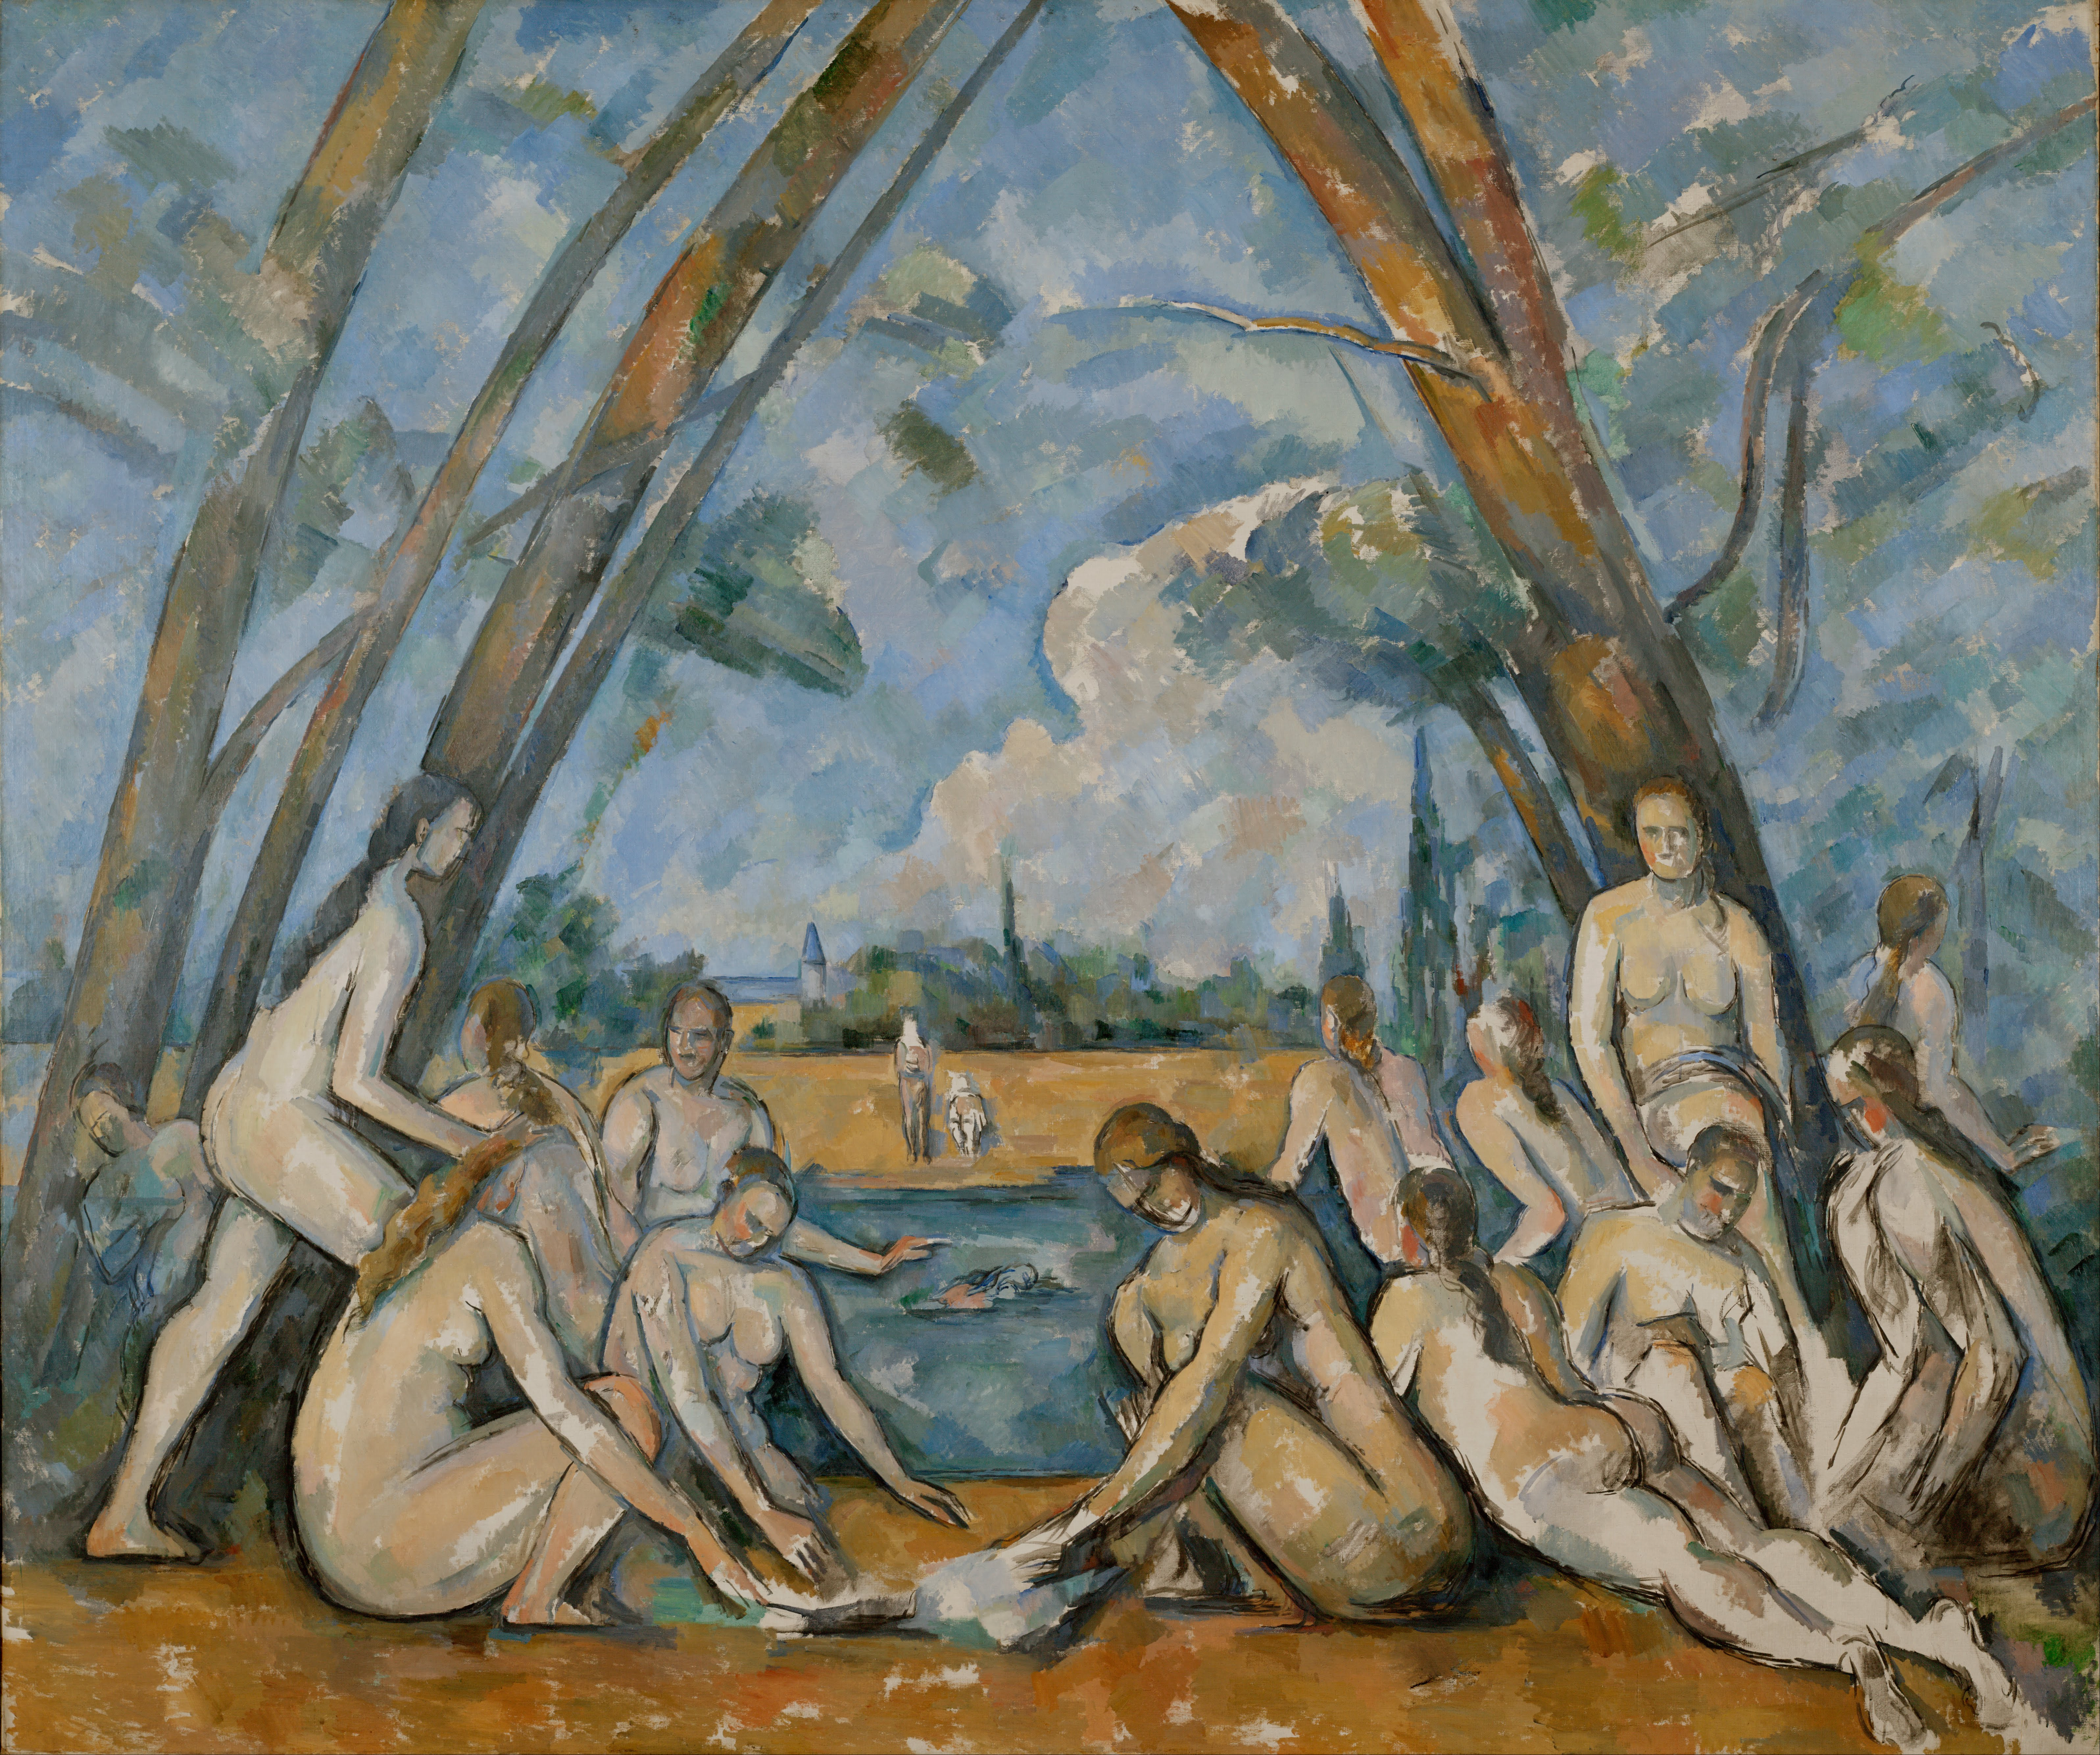 Paul Cézanne, “Le grandi bagnanti”, 1906